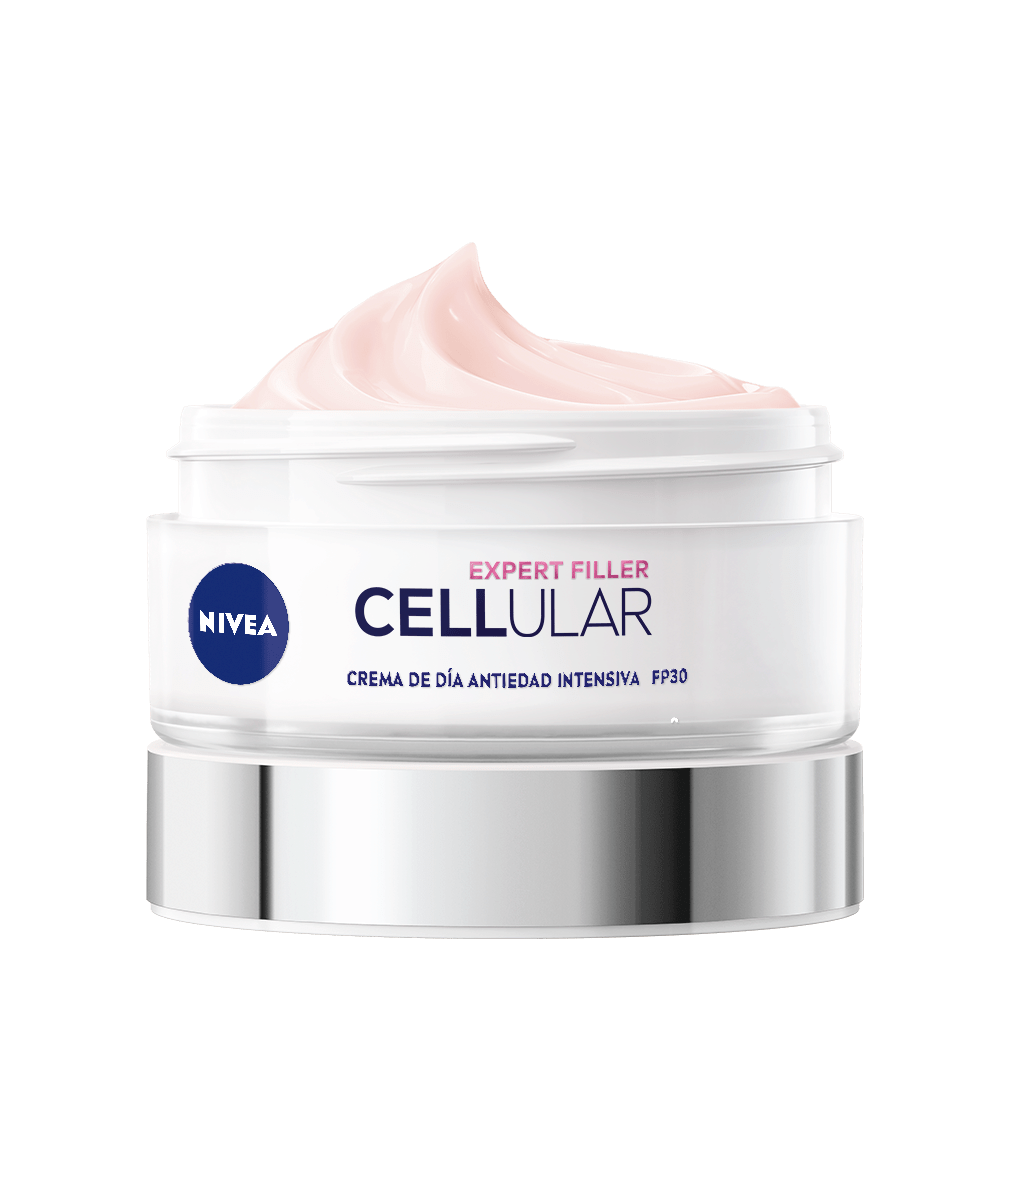 NIVEA Cellular Expert Filler Crema de Día FP30